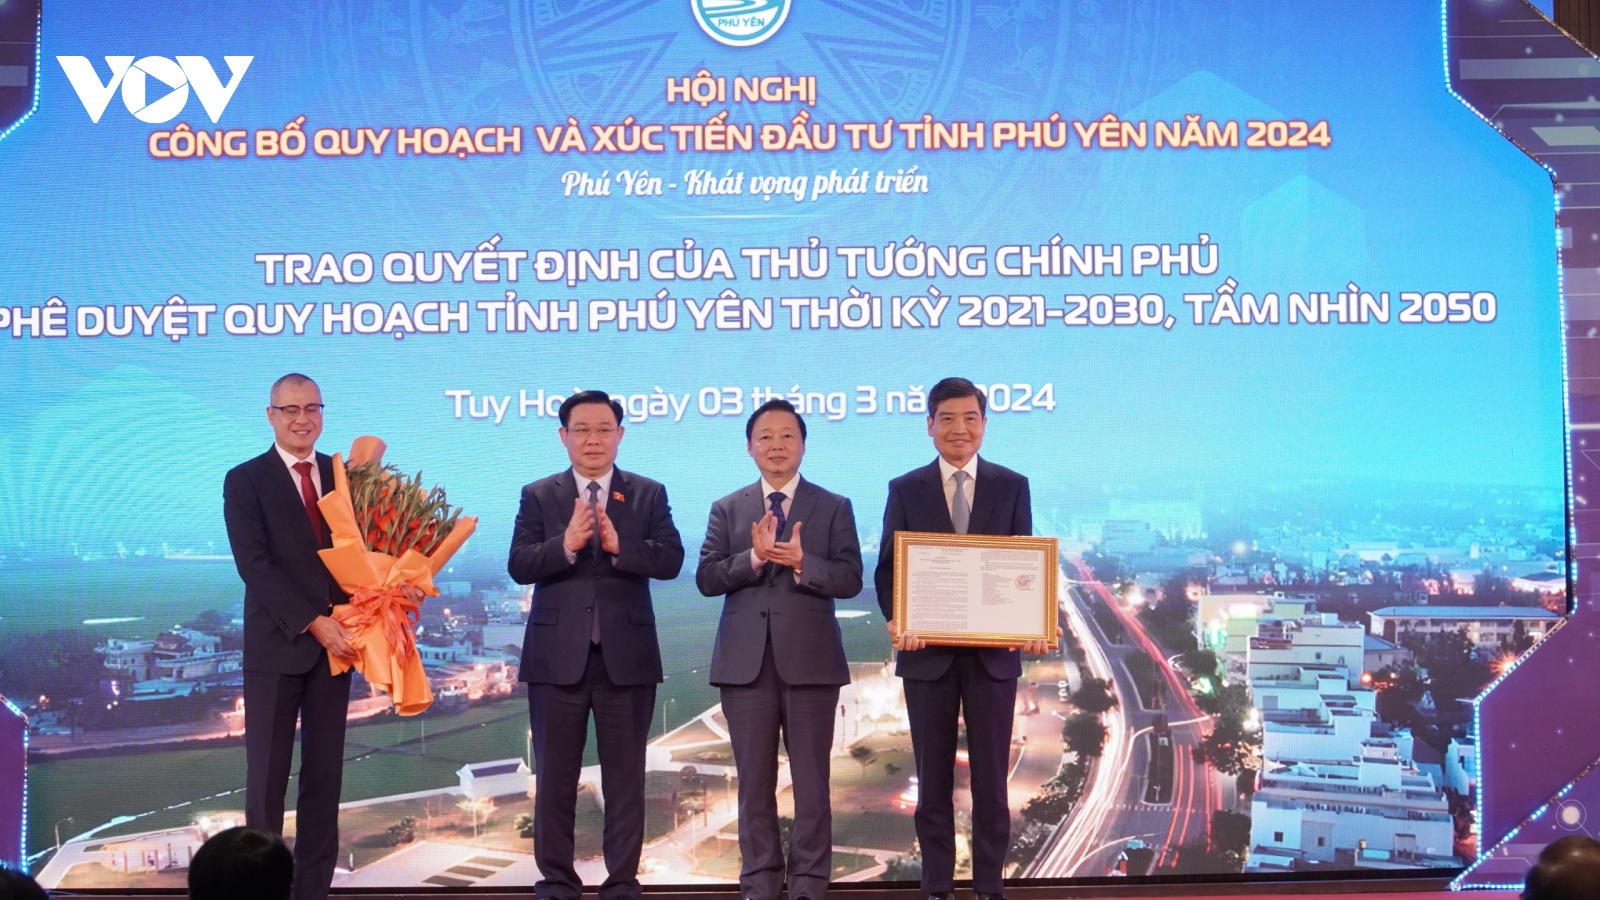 Chủ tịch Quốc hội dự Hội nghị công bố Quy hoạch và Xúc tiến đầu tư tỉnh Phú Yên